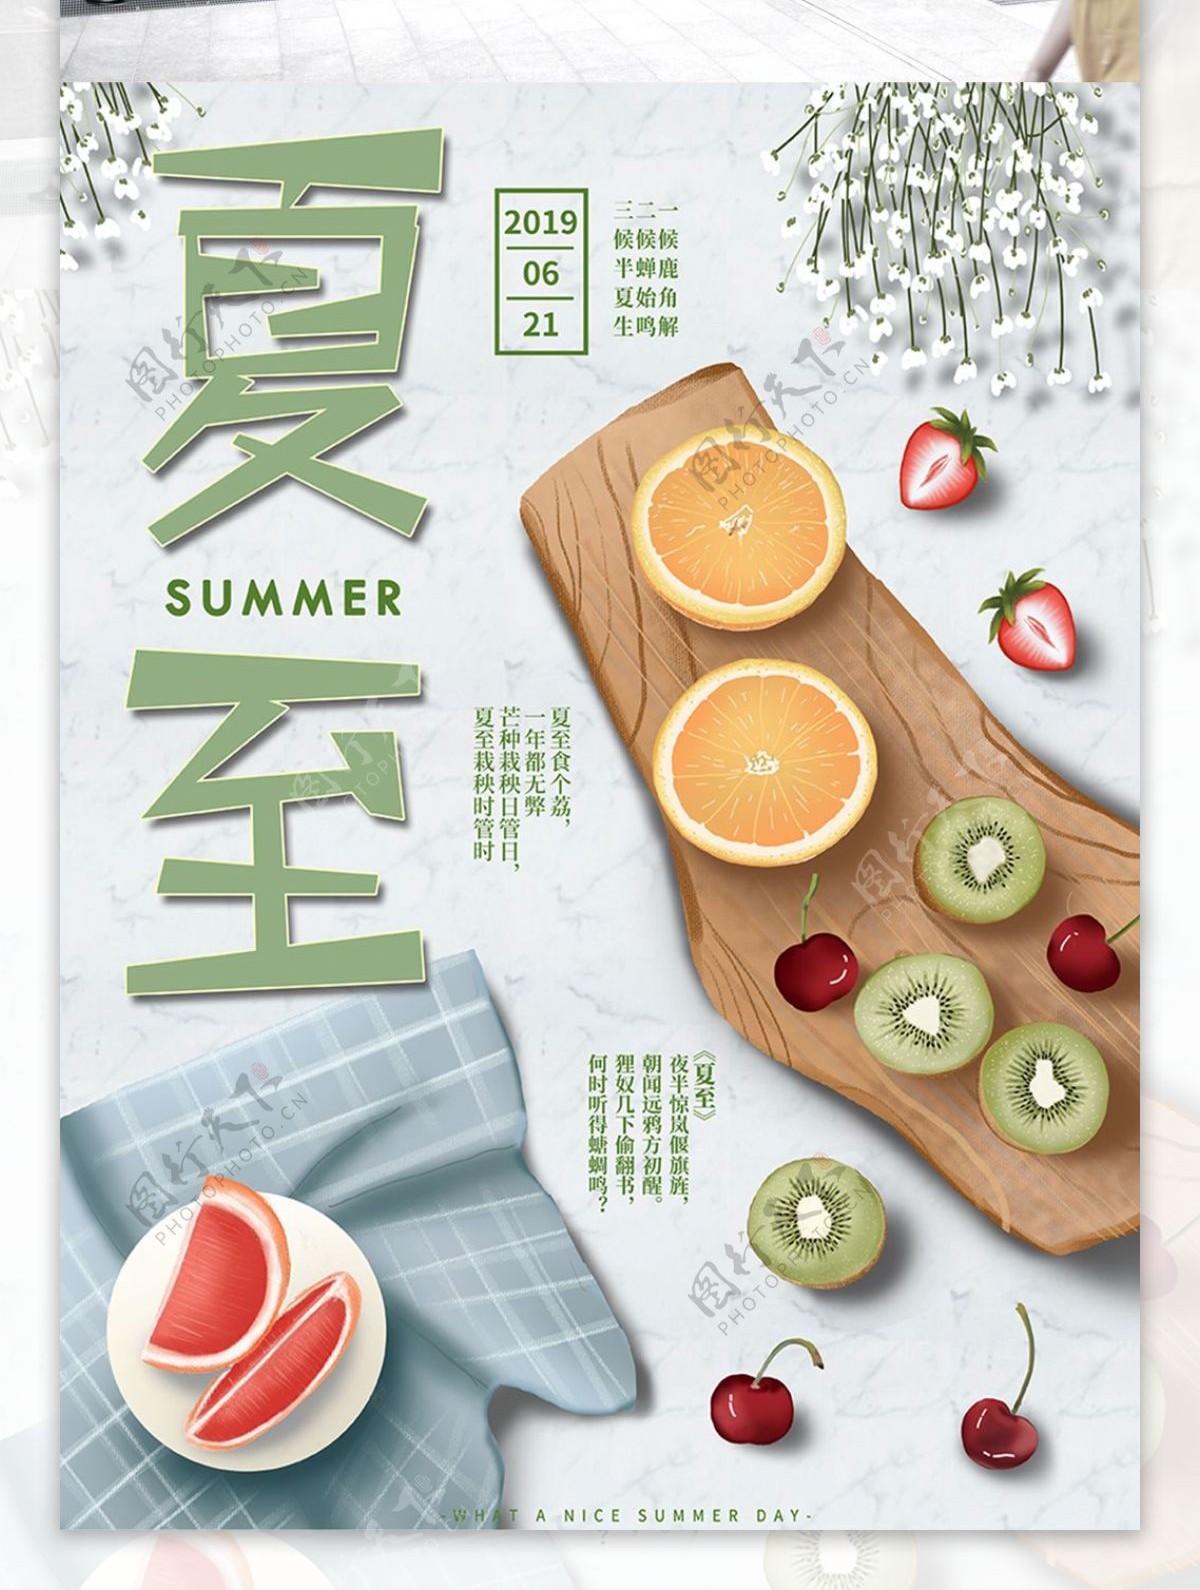 原创手绘水果清新夏至宣传海报